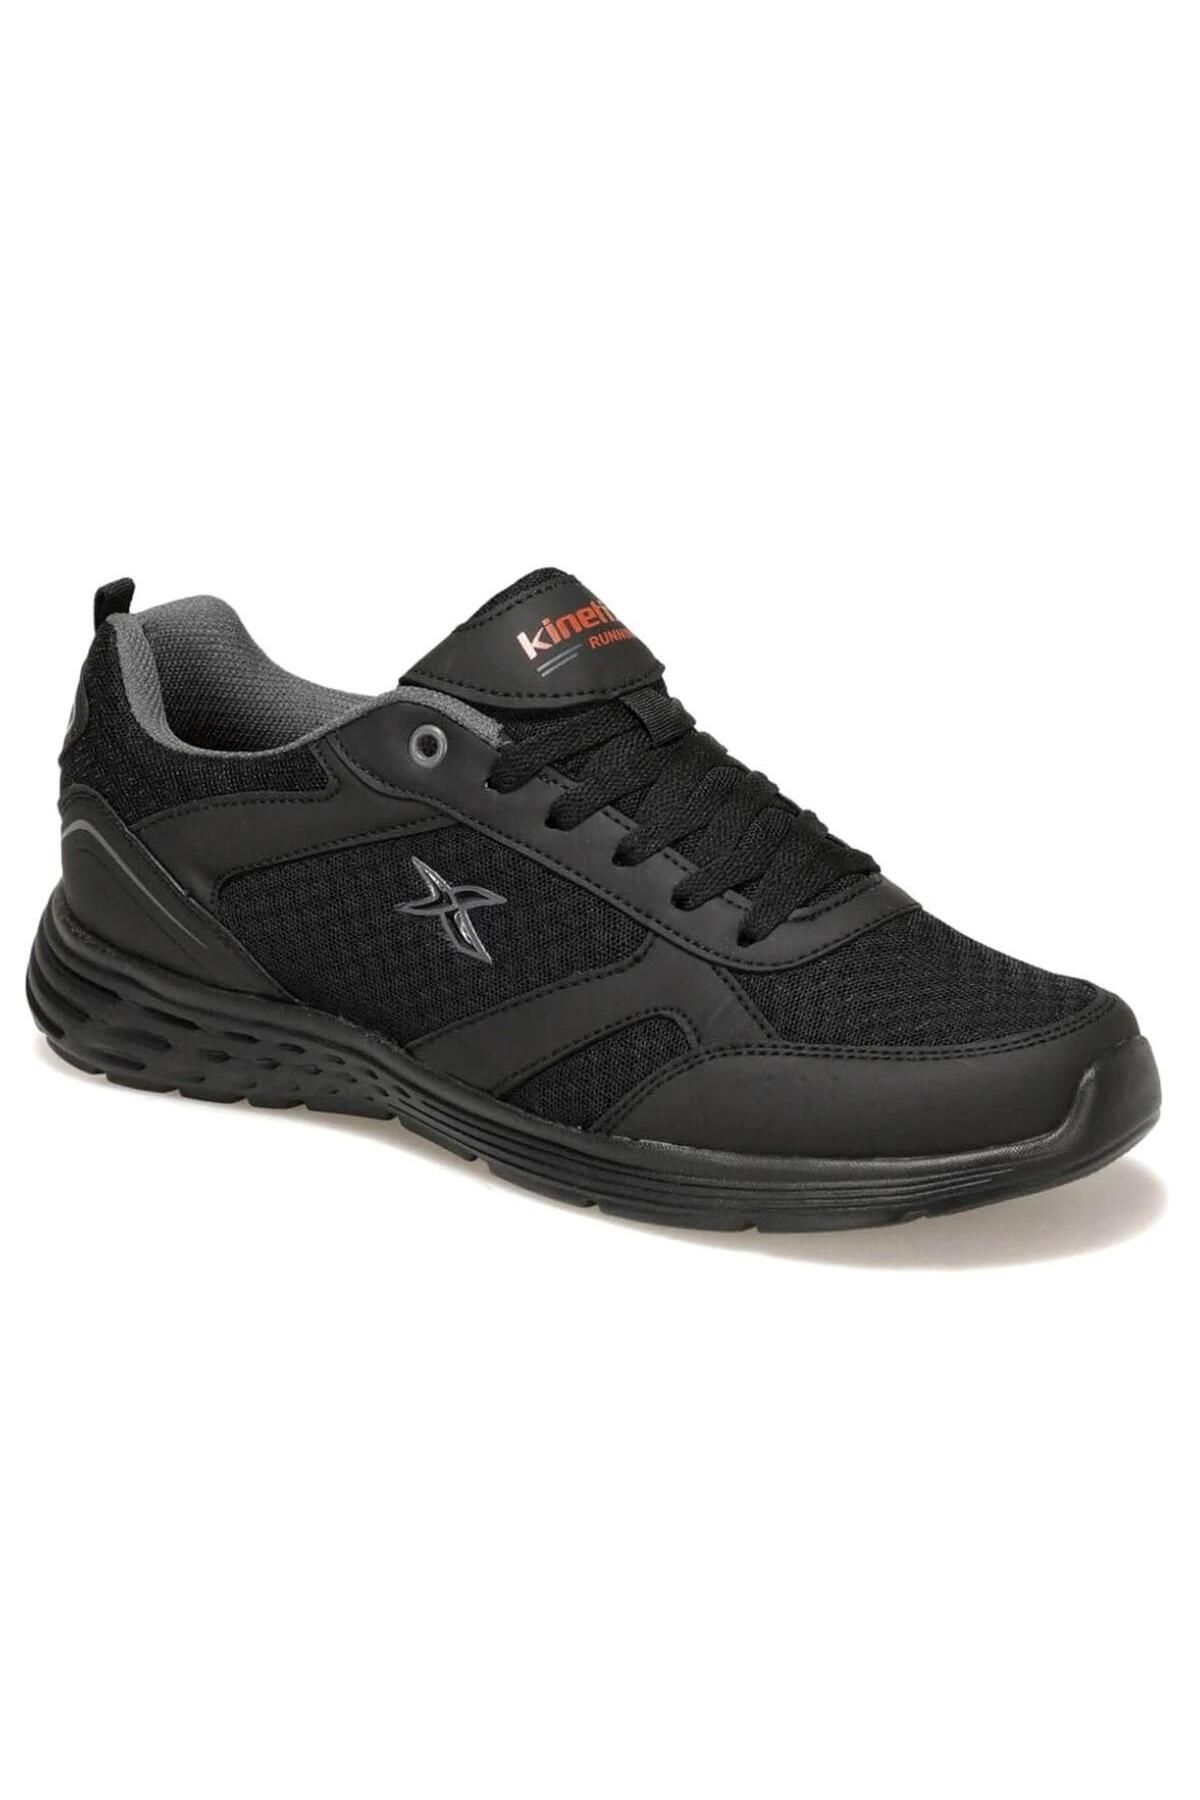 Kinetix Apex 24YA Erkek Günlük Spor Ayakkabı - Siyah